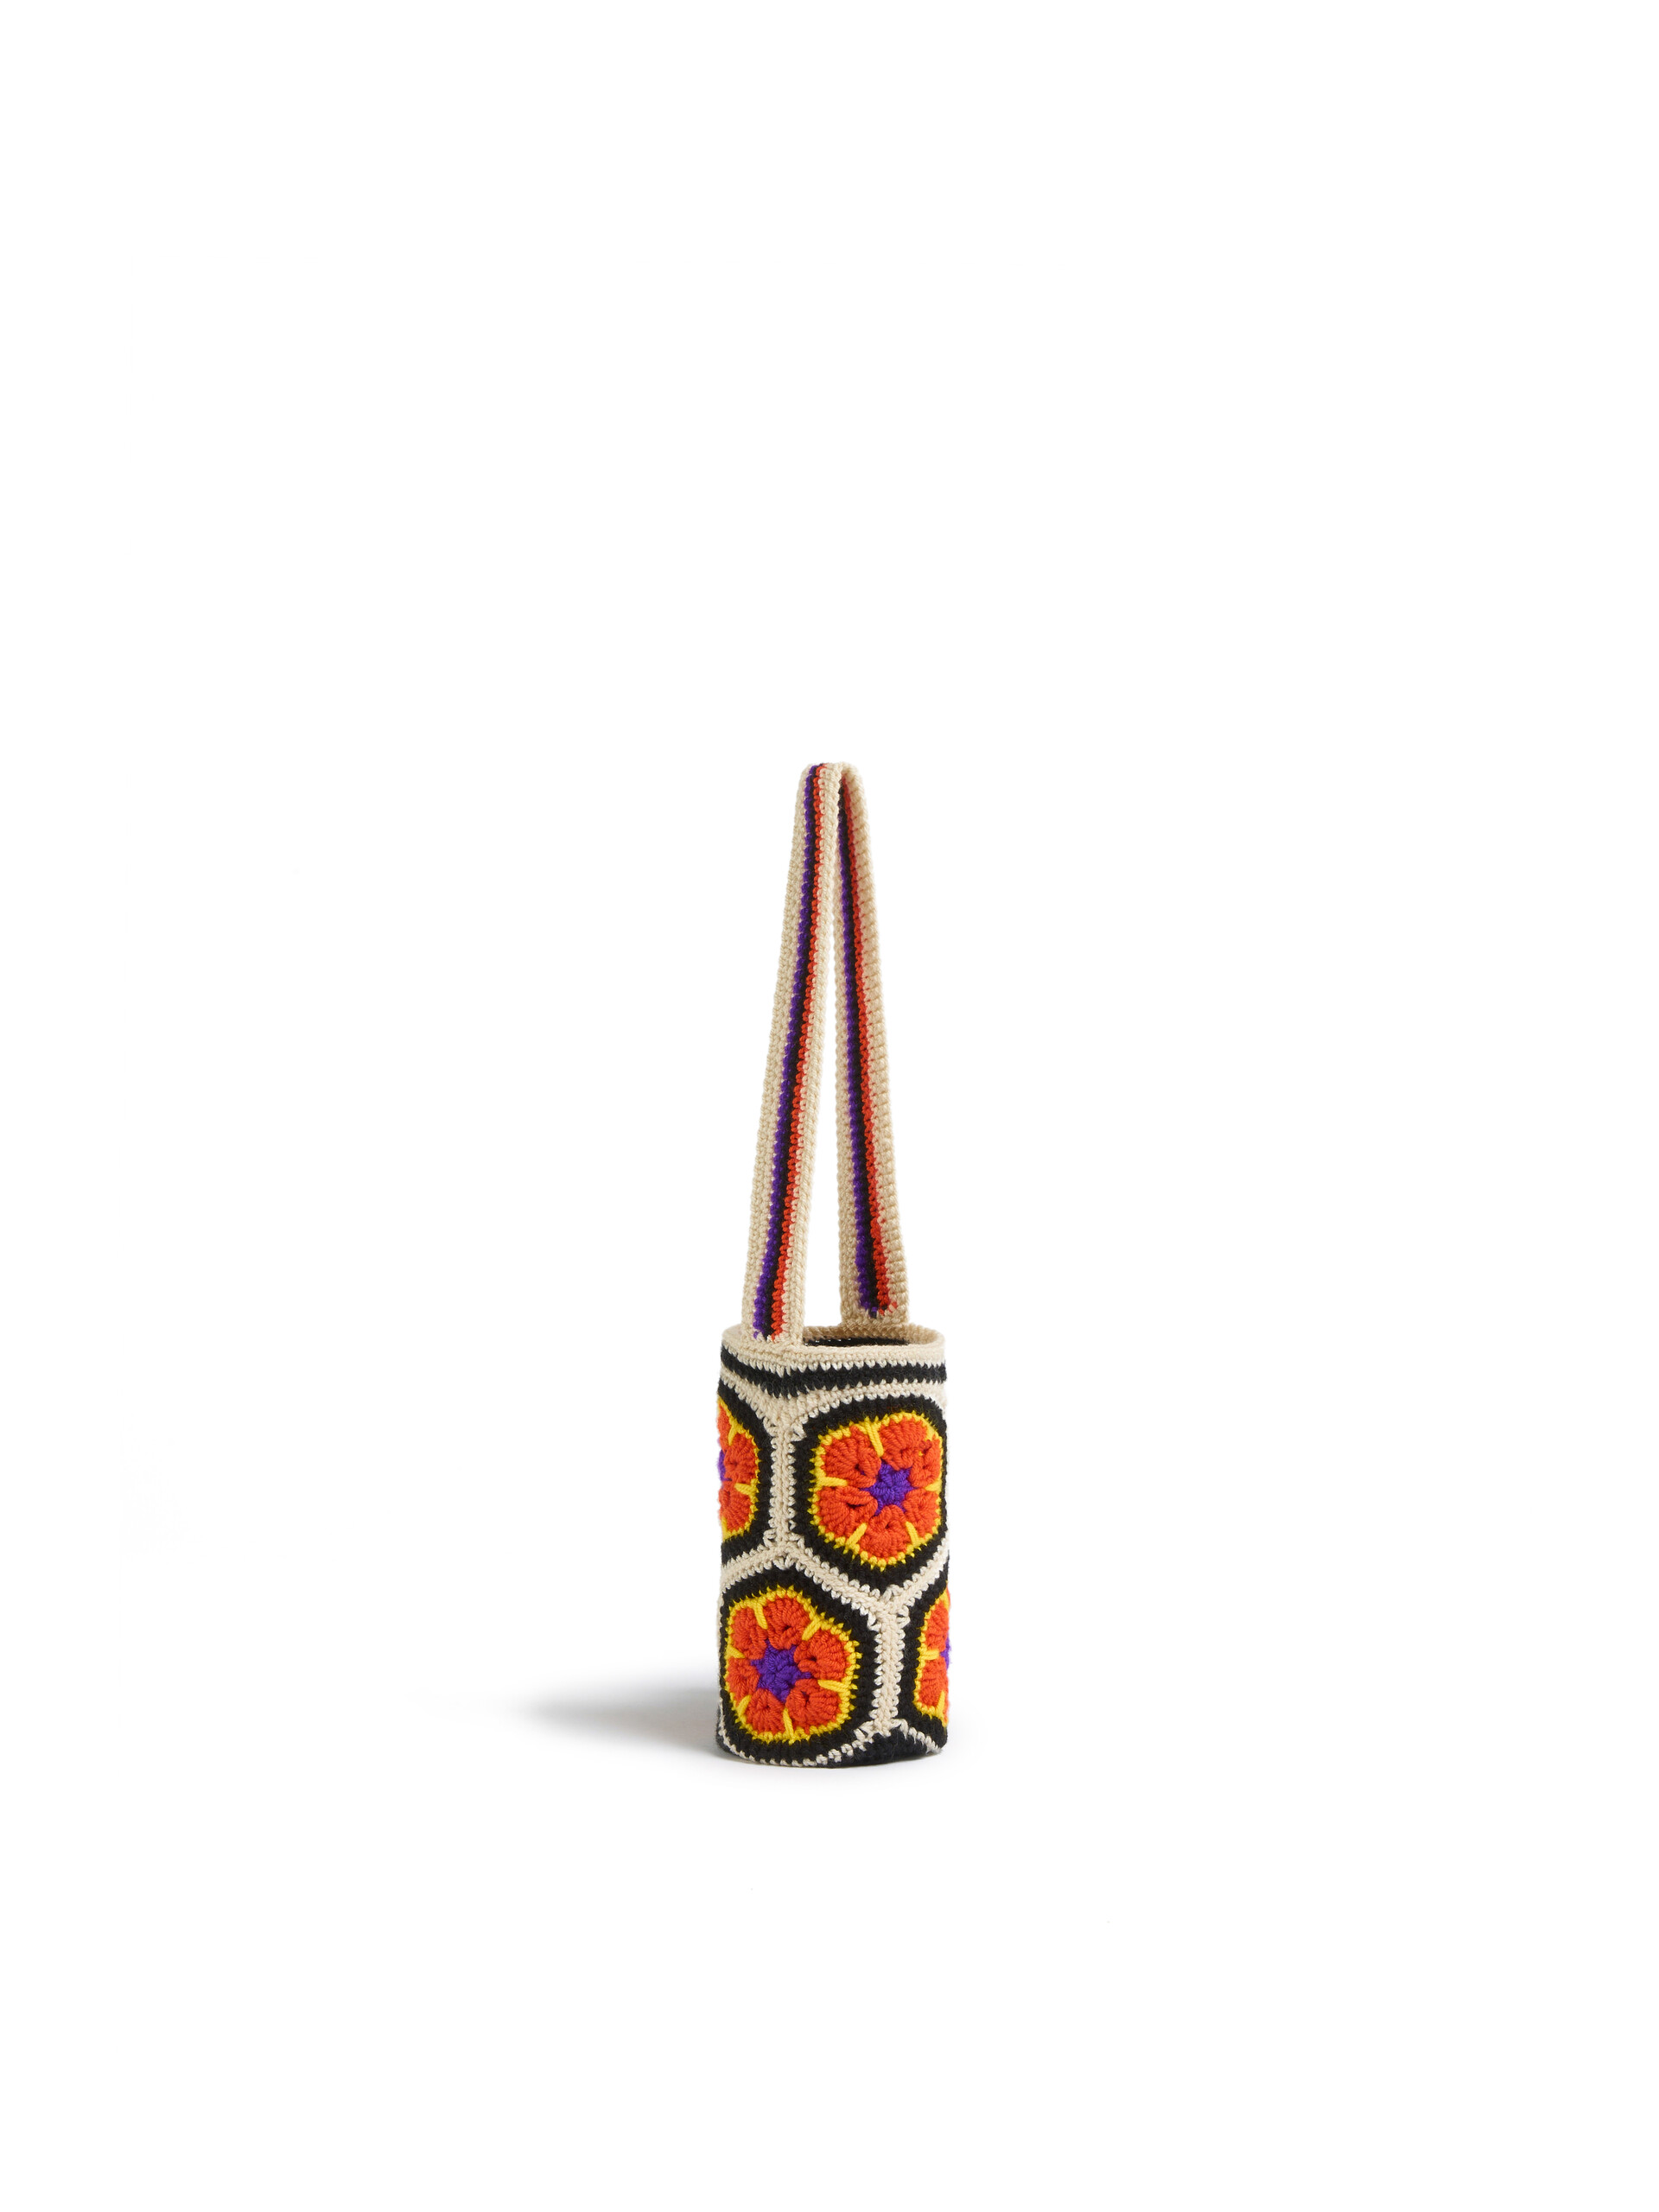 Portabottiglia MARNI MARKET in lana tecnica crochet arancione - Arredamento - Image 2